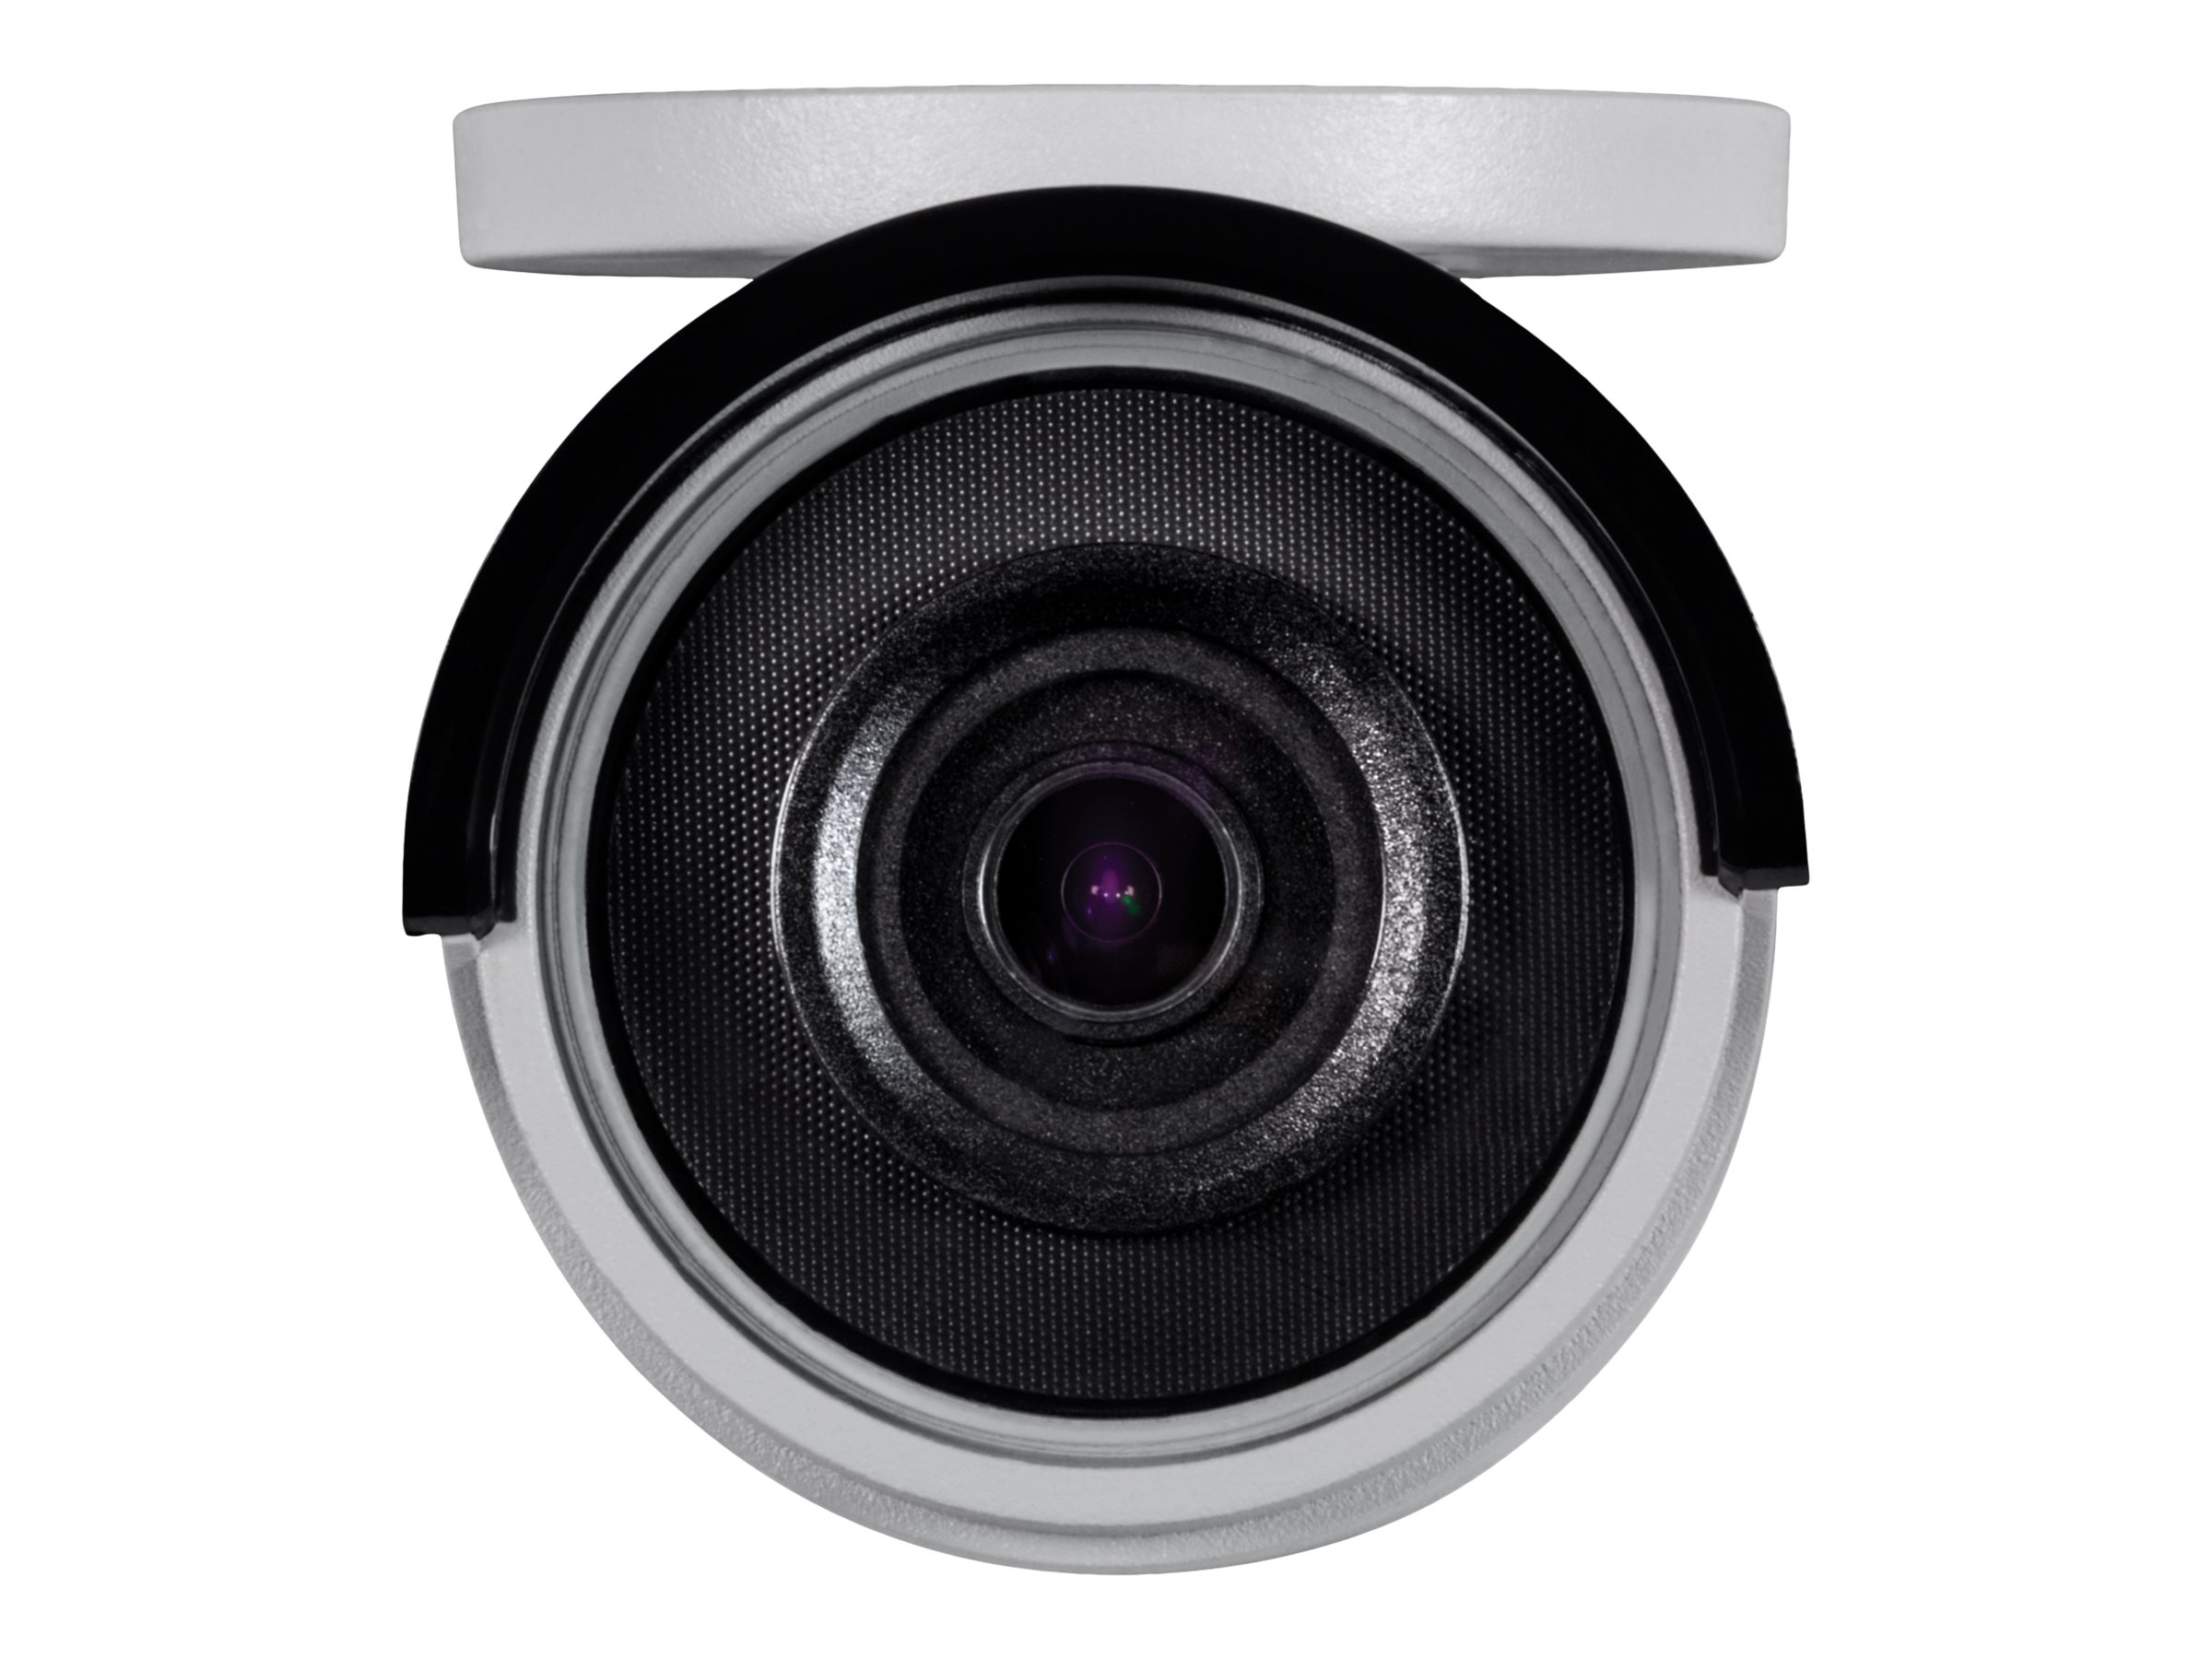 TRENDnet TV-IP1314PI - network surveillance camera